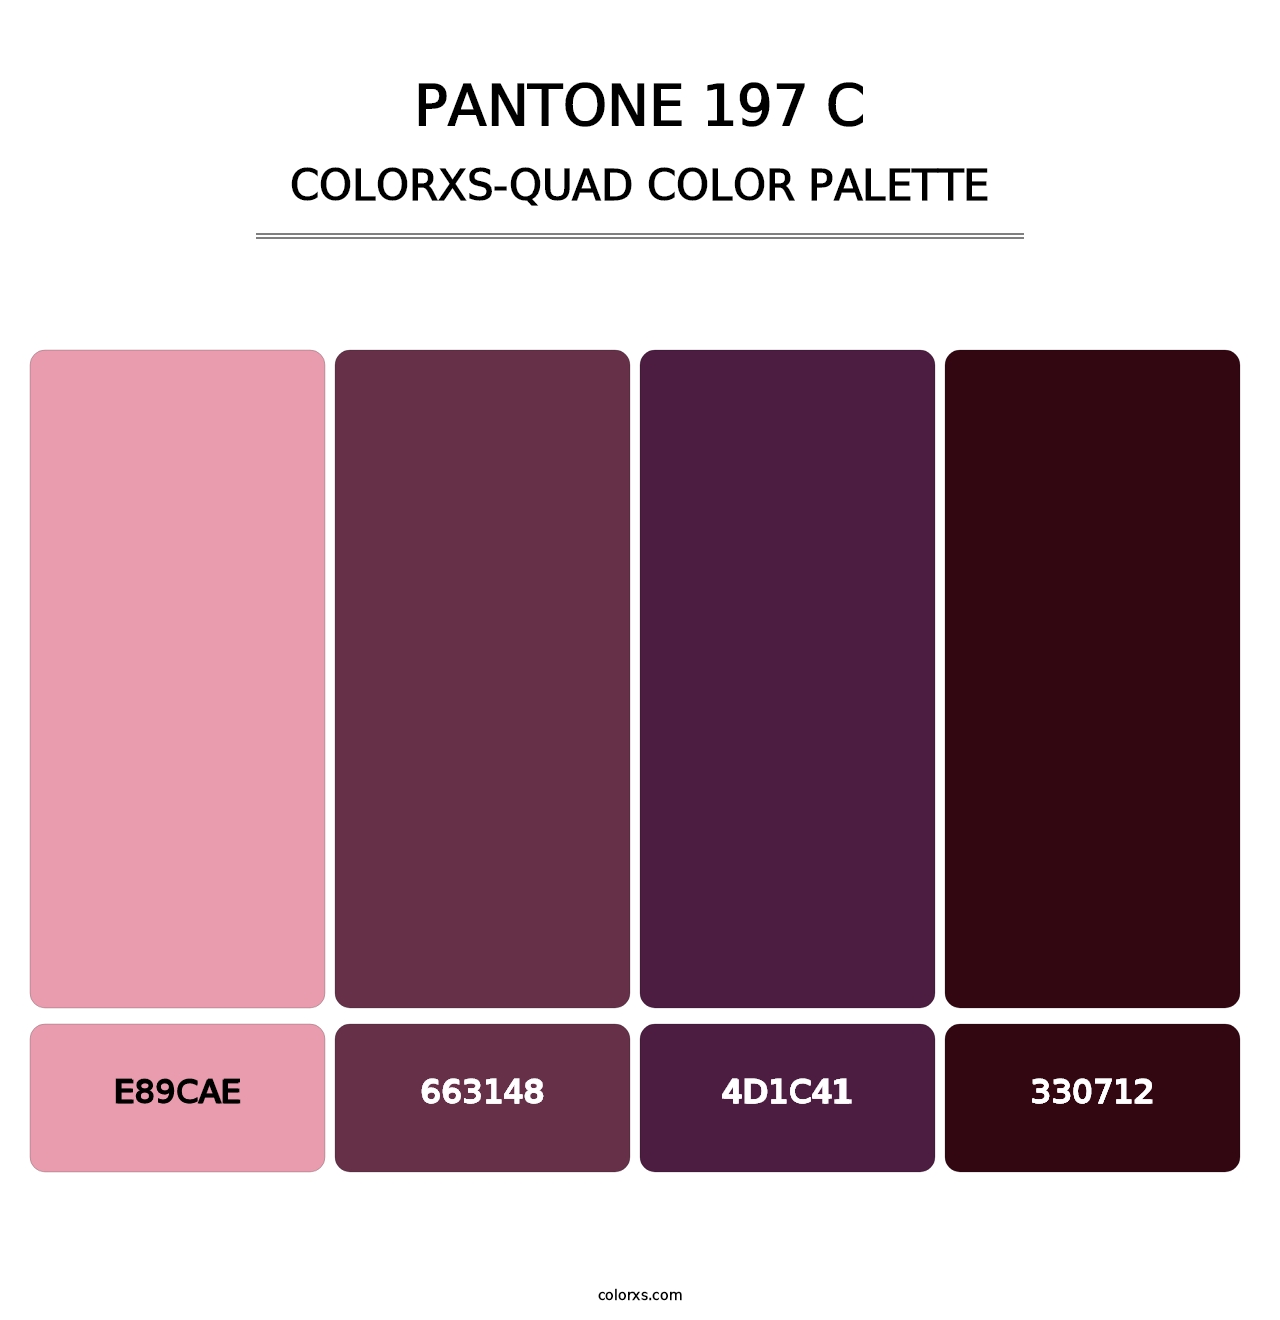 PANTONE 197 C - Colorxs Quad Palette